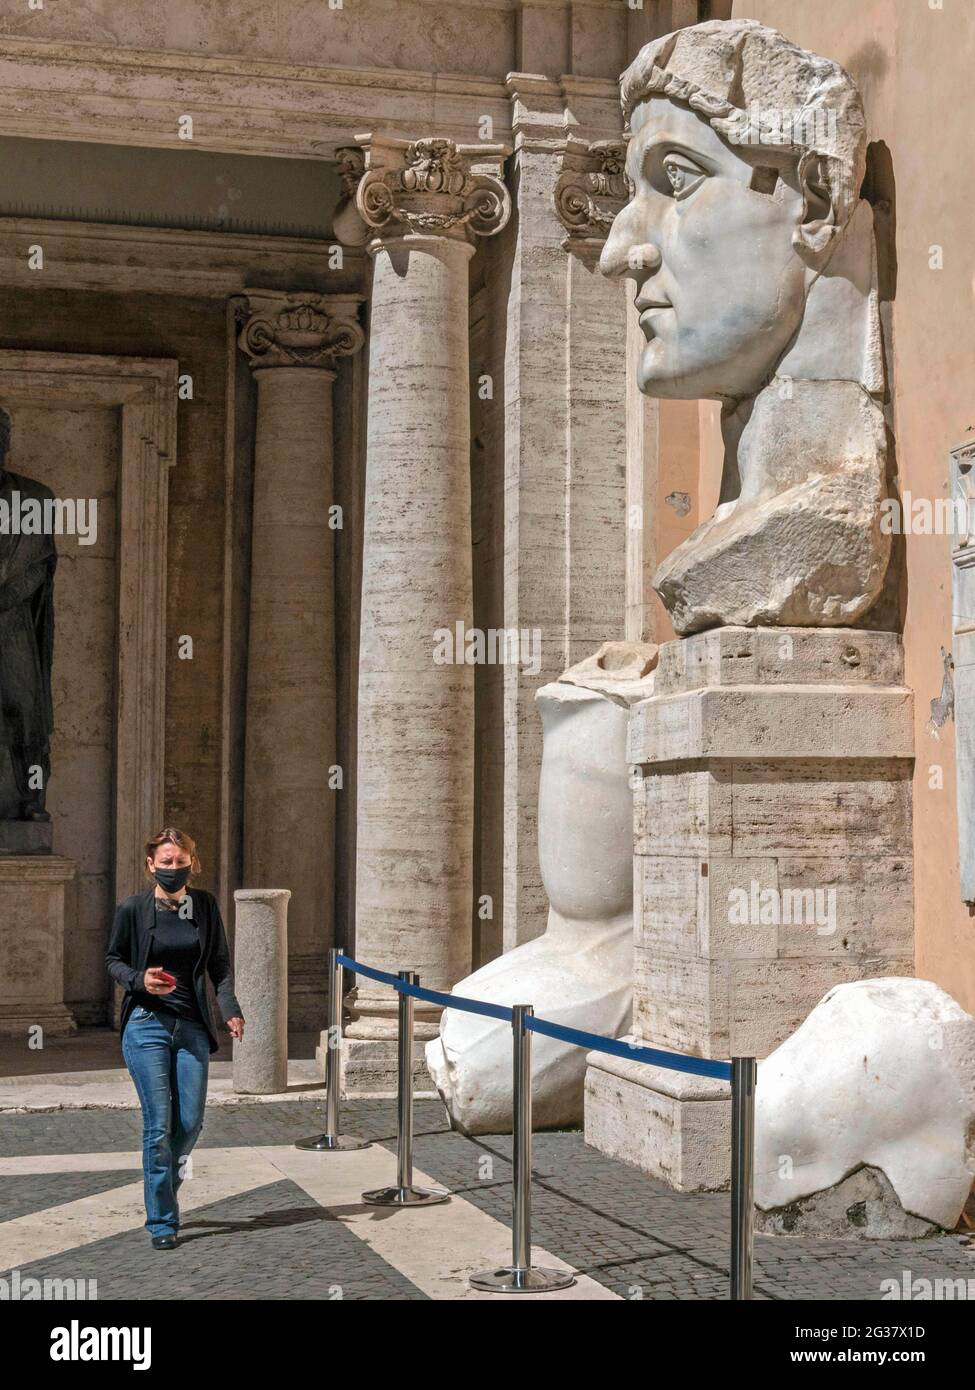 Italie, Rome, 17 juin 2020 : les visiteurs portant des masques chirurgicaux explorent le Musei Capitolini à Rome qui a récemment rouvert après près de trois mois de c Banque D'Images